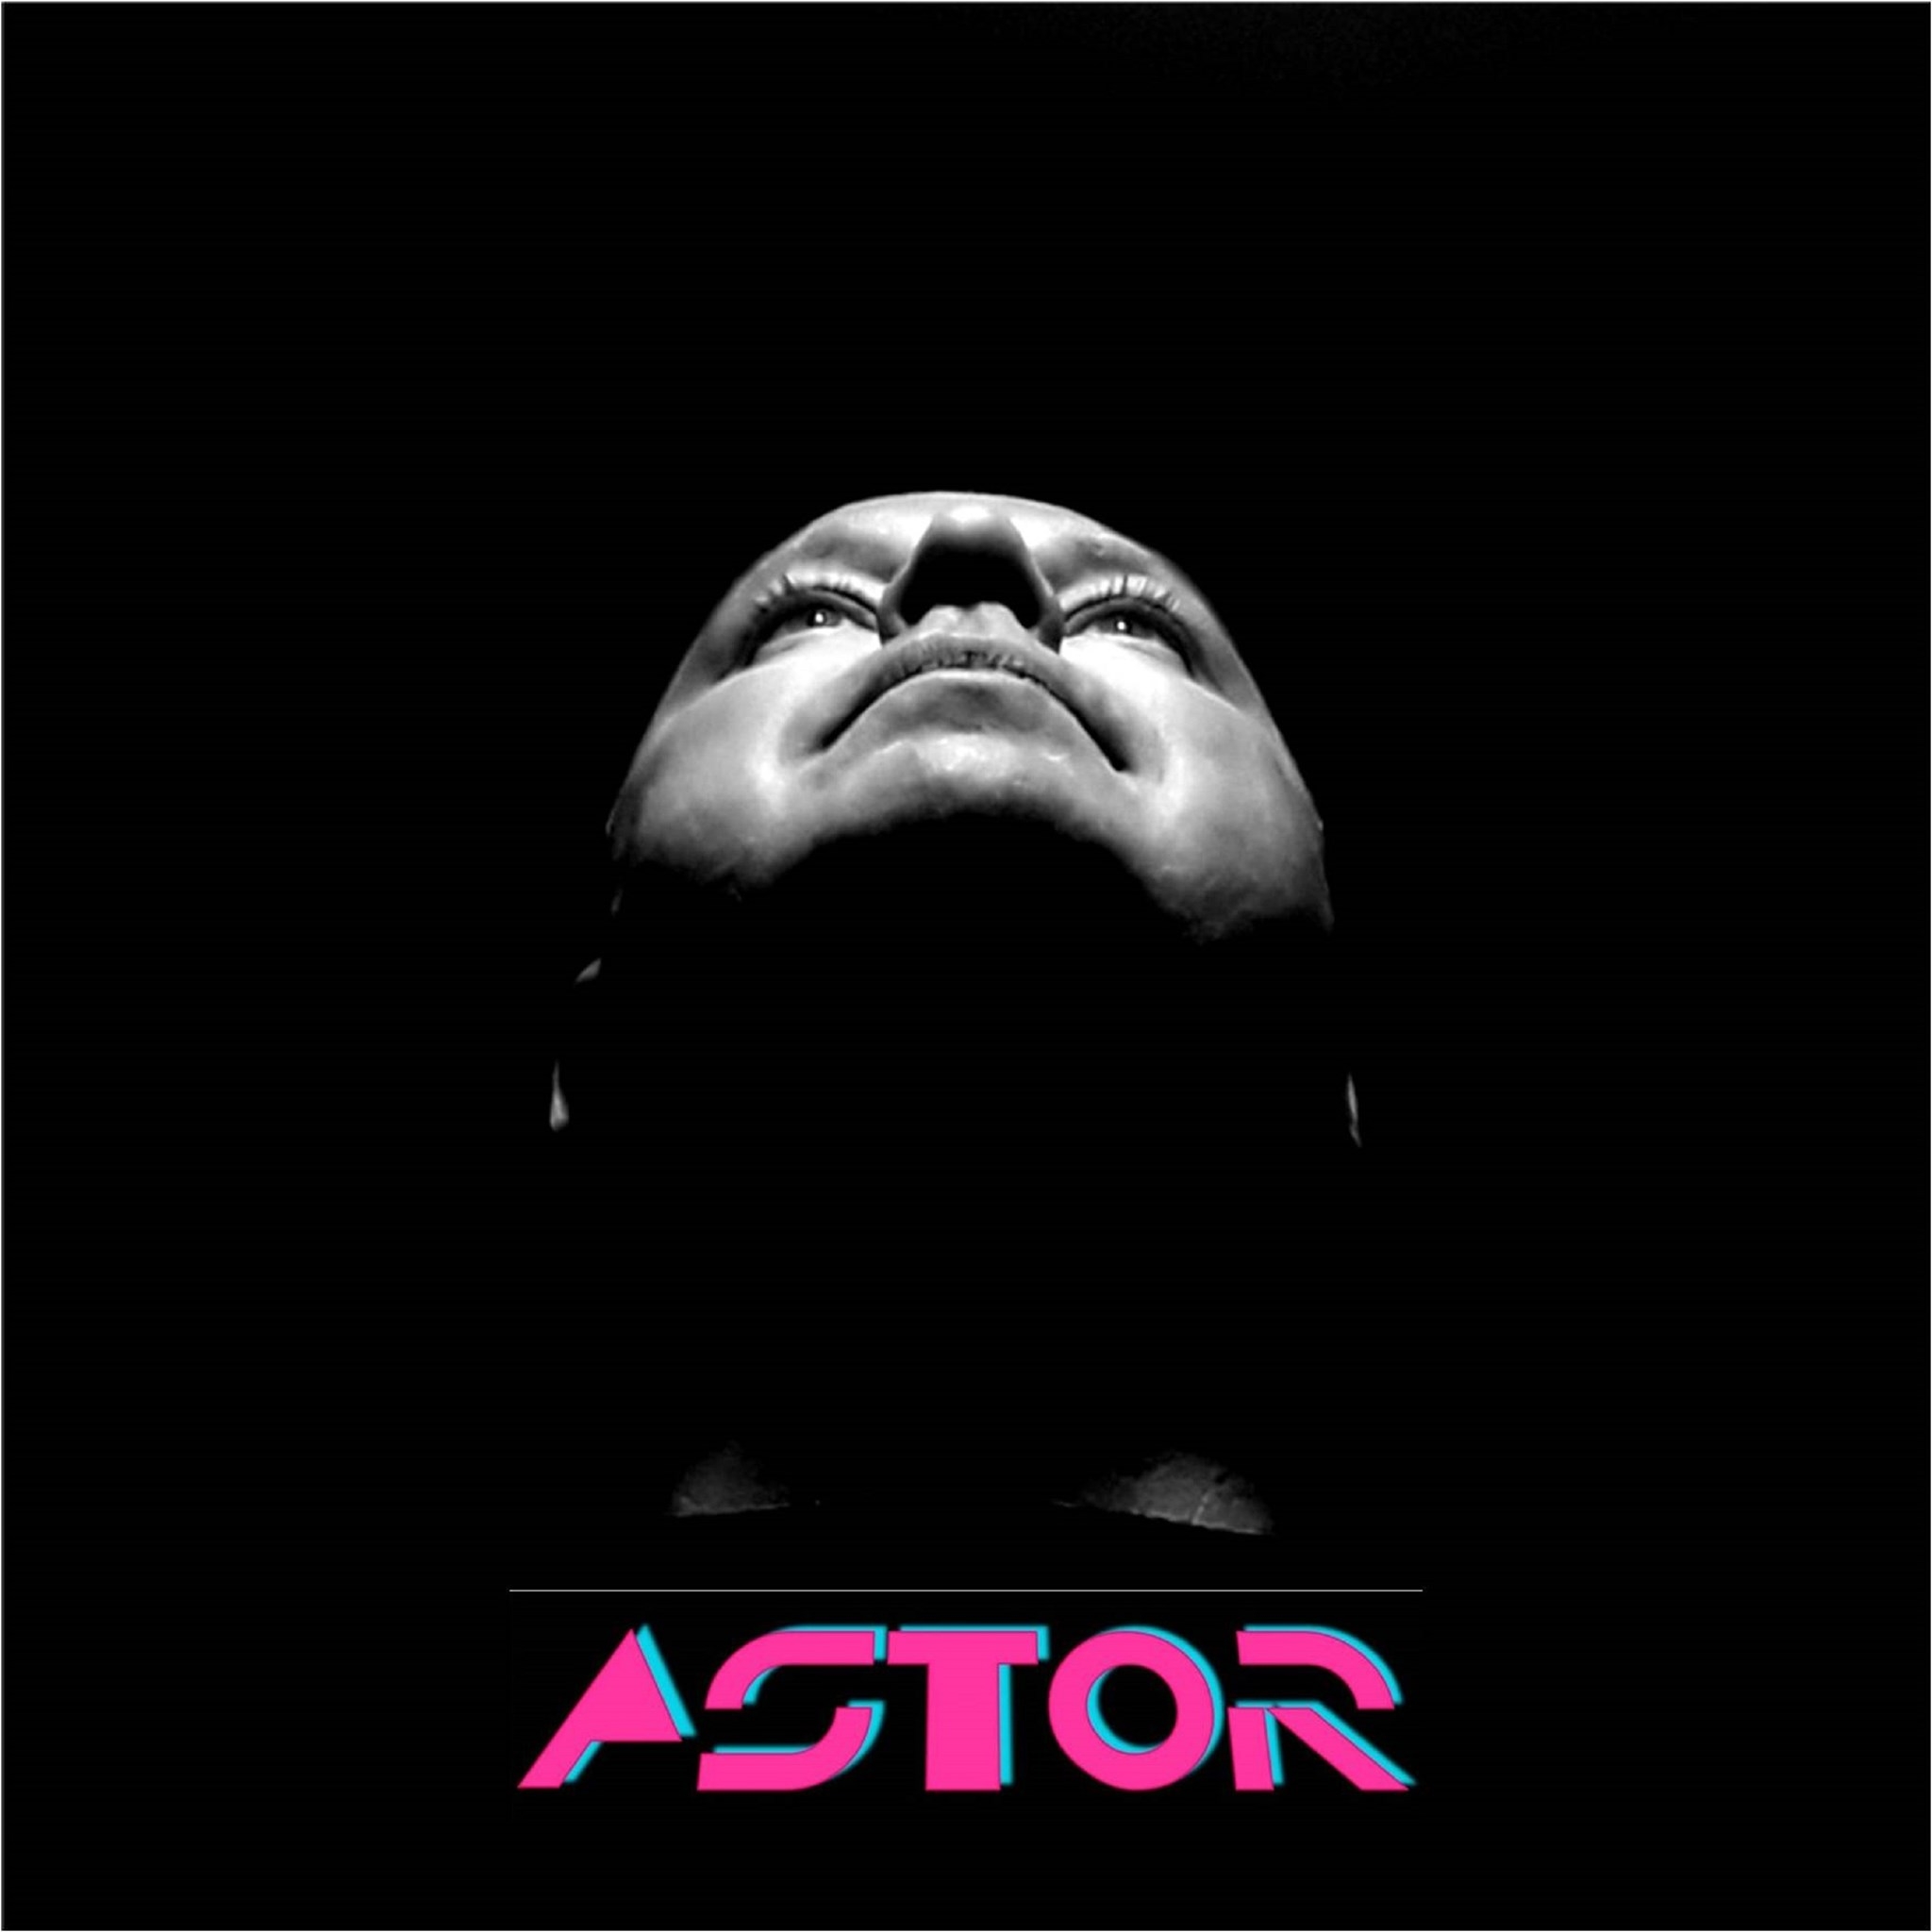 No momento você está vendo Astor: Wlad Zechner (U Just) estreia projeto synthwave